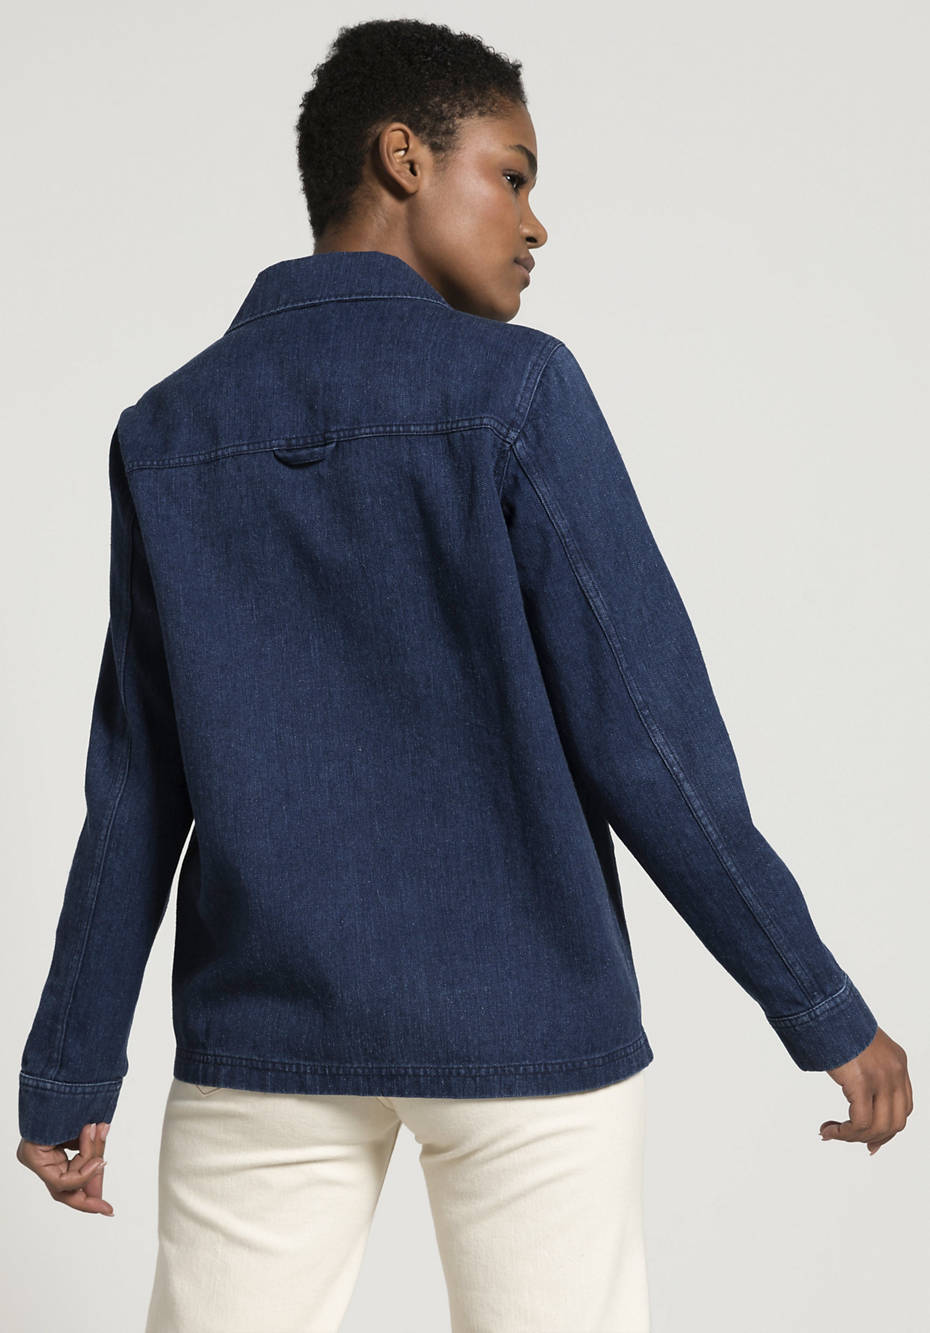 Jeansjacke aus Hanf mit Bio-Baumwolle